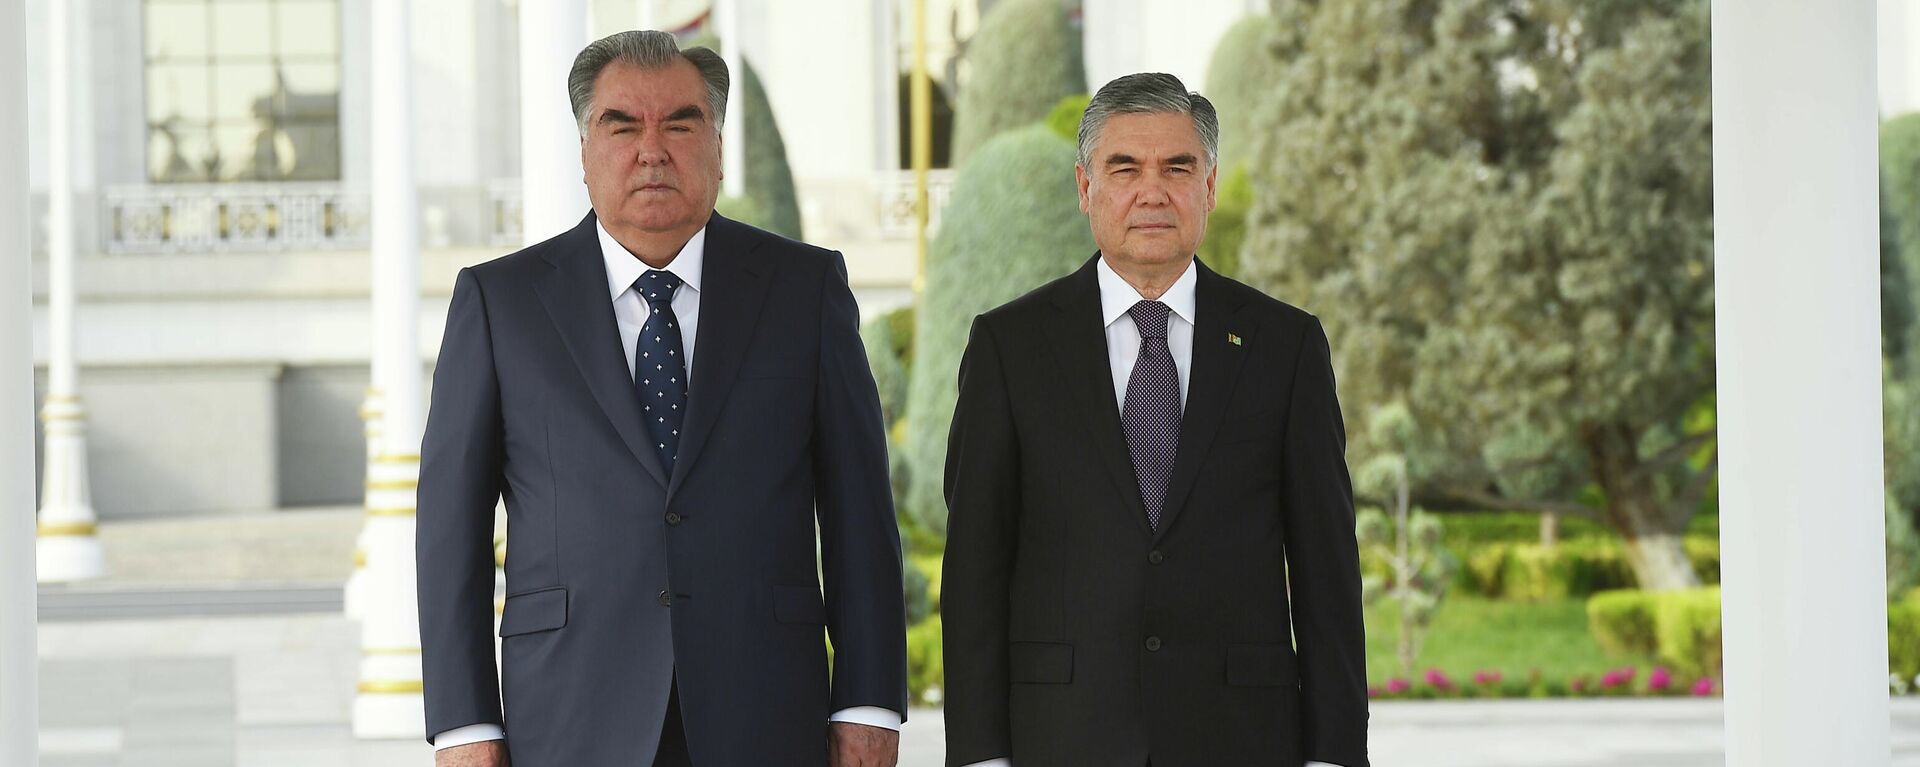 Эмомали Рахмон президент Таджикистана, и Гурбангулы Бердымухамедов президент Туркменистана - Sputnik Таджикистан, 1920, 17.09.2021